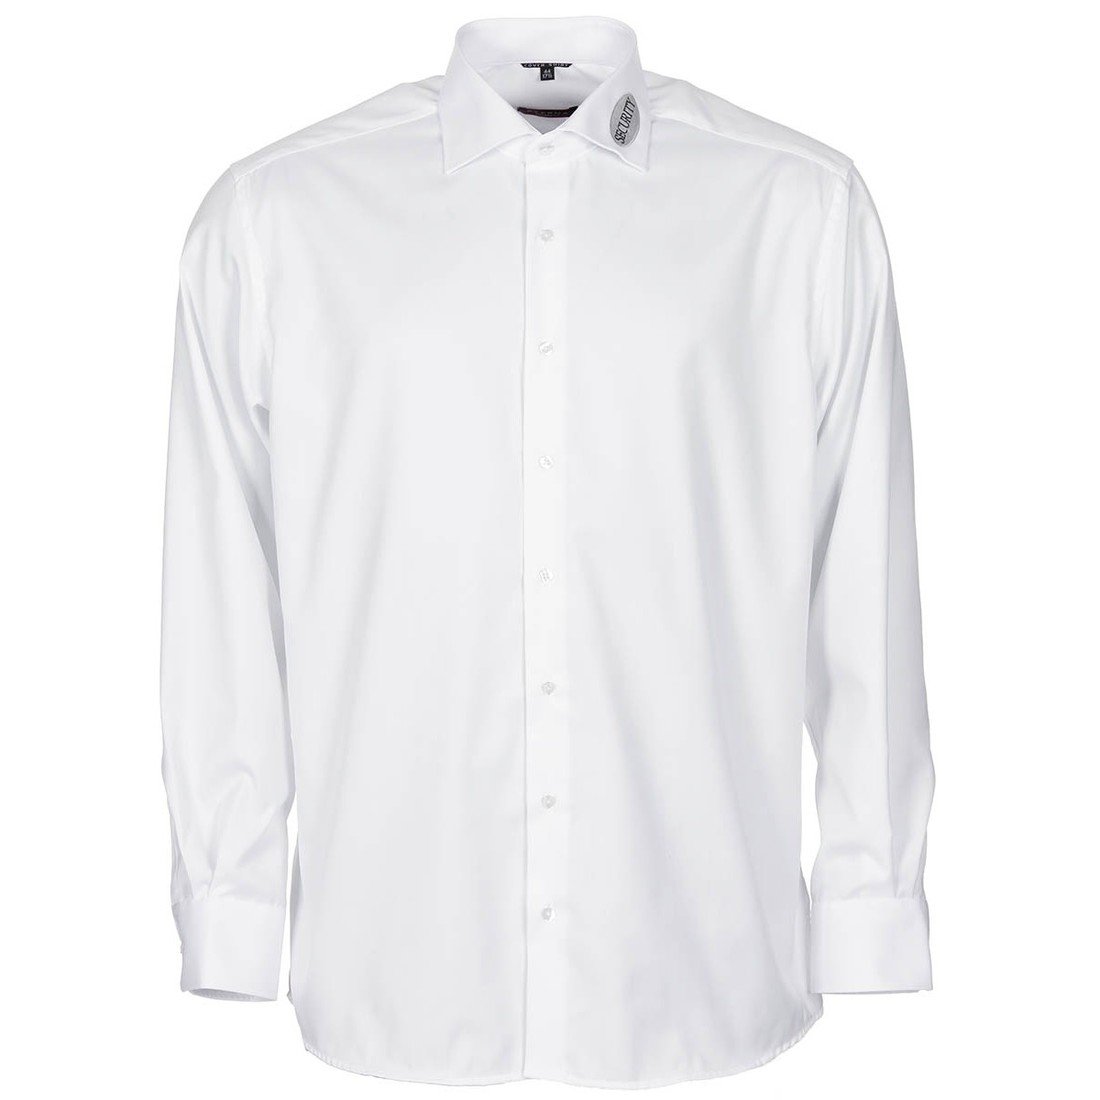 Košile Eterna Security s výšivkou - bílá, 39